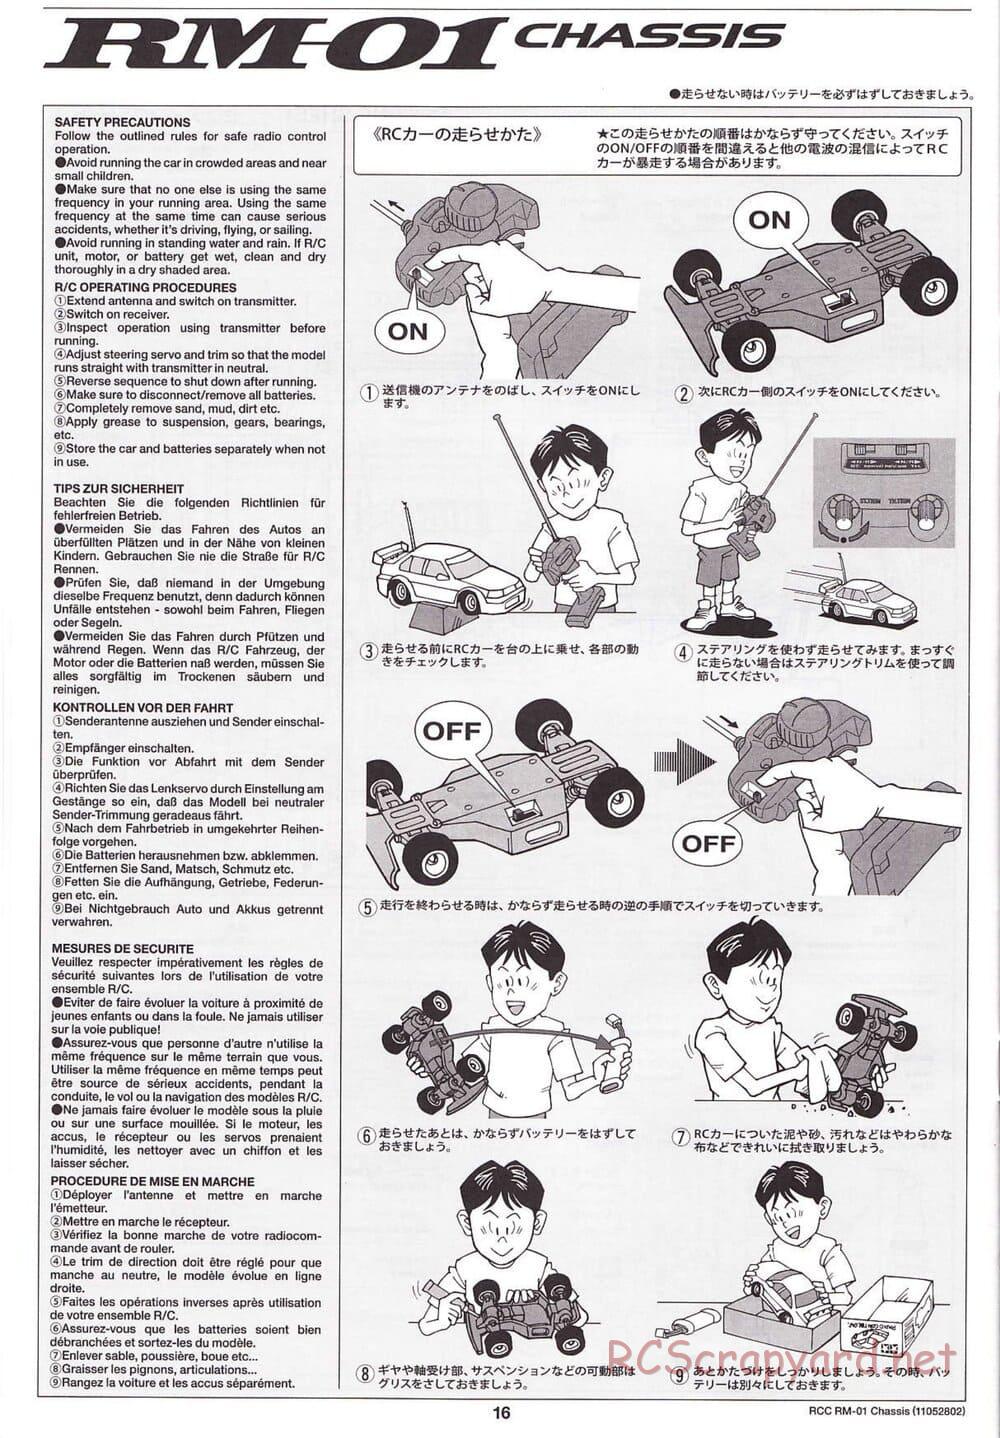 Tamiya - TA04-SS Chassis - Manual - Page 16